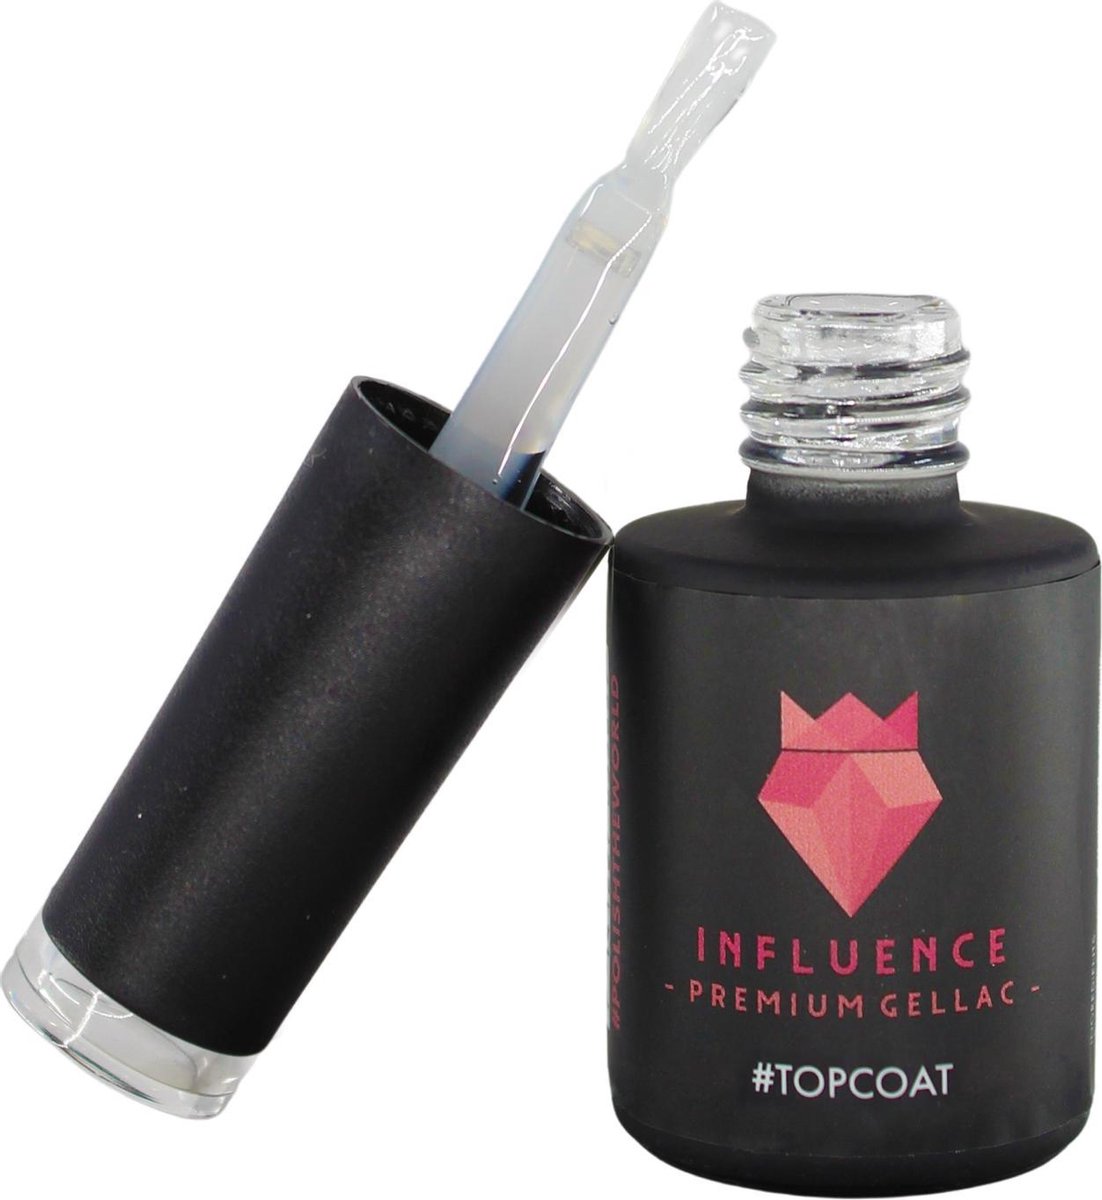 #TOPCOAT - Influence Gellac - No wipe topcoat - Topcoat gellak UV - UV Gellak - Gel nagellak - Gellac - Kado vrouw - Valentijns cadeau - Kado voor haar - 10 ml - Influence - Premium Gellac